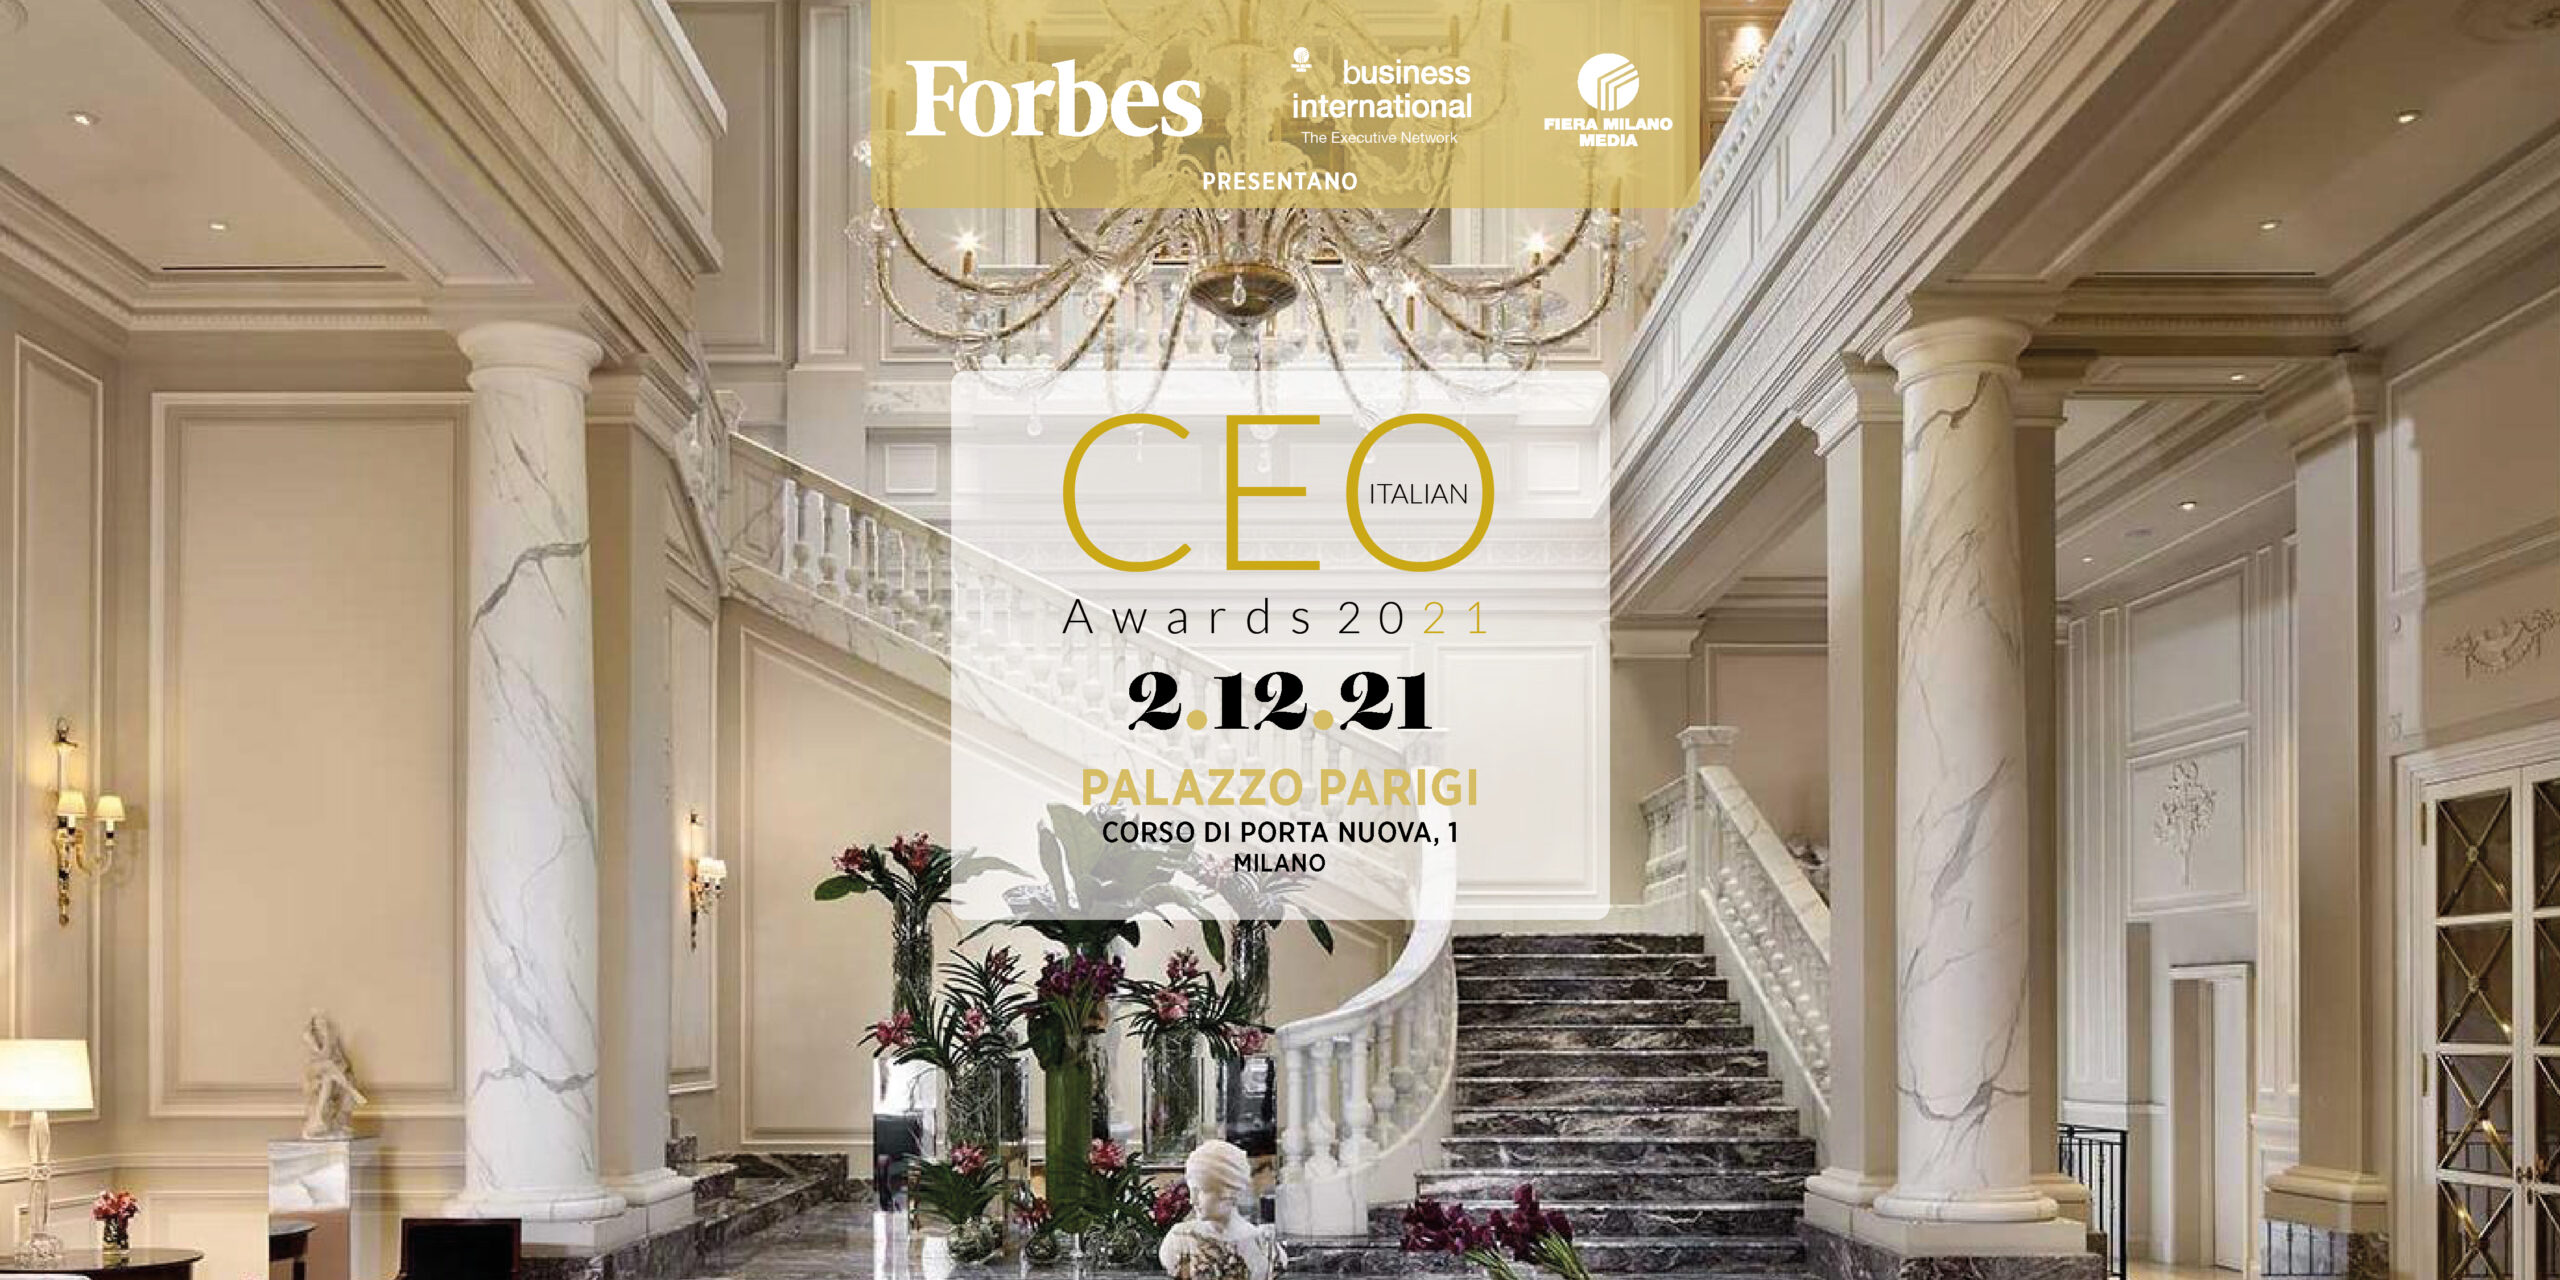 Forbes Ceo Italian Awards 2021